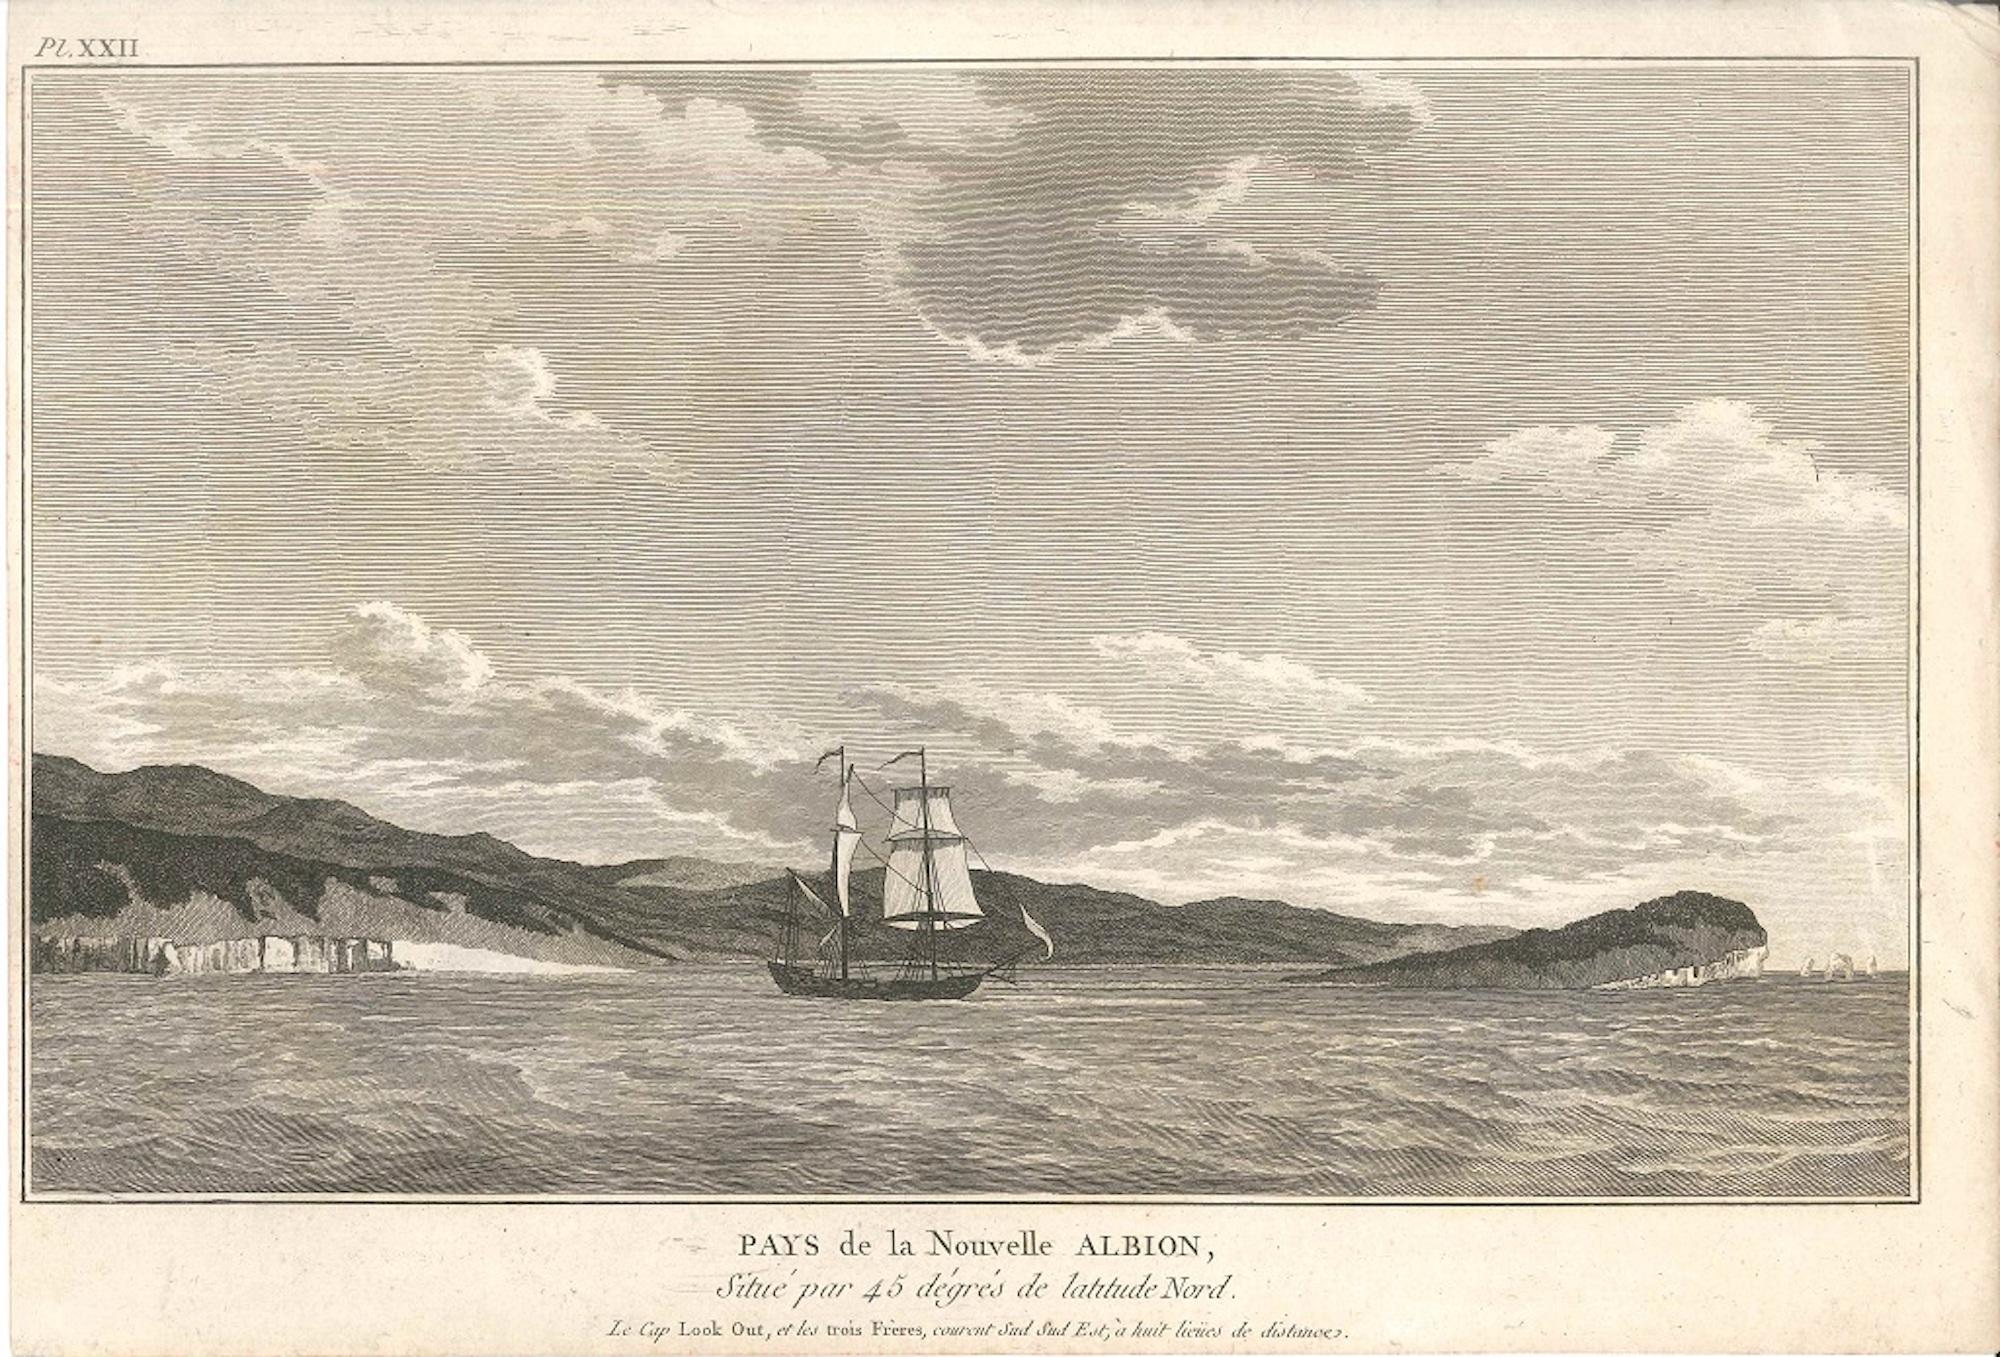 John Meares Figurative Print - Pays de la Nouvelle Albion - Original Etching 1795